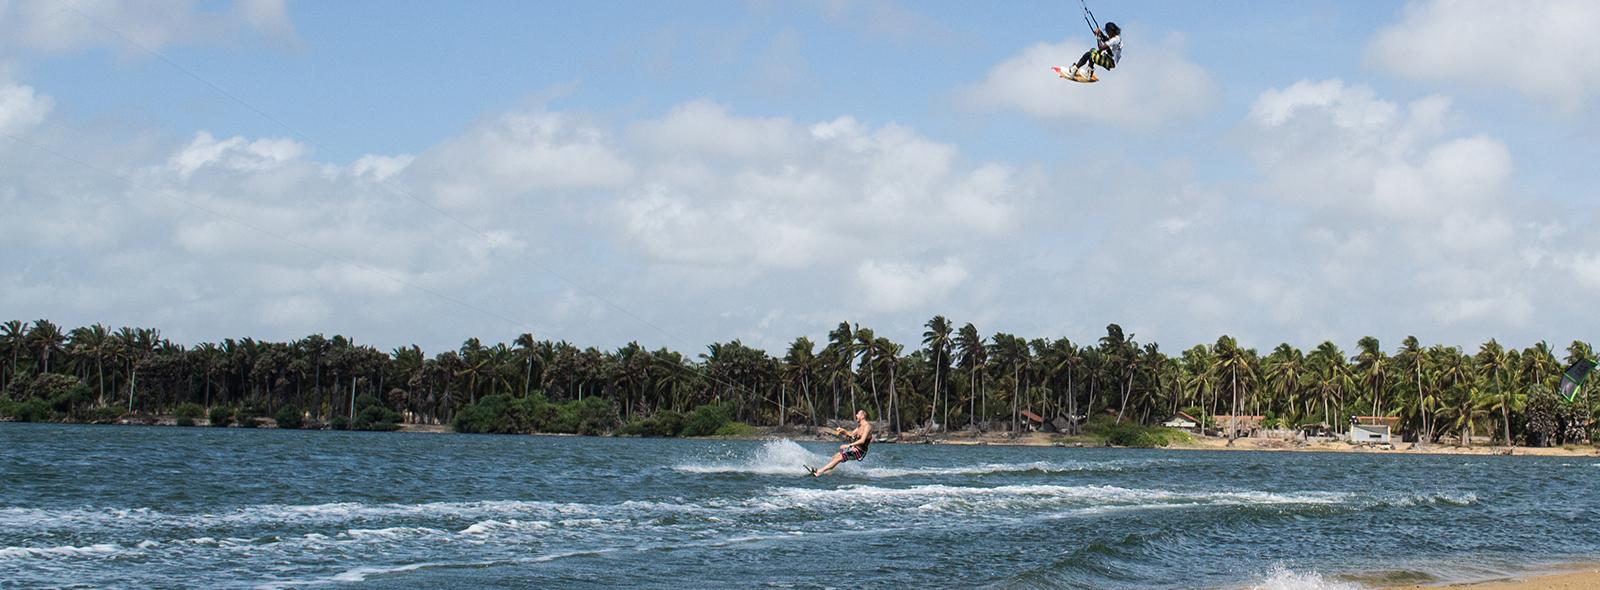 Partez découvrir le Sri Lanka pour rider en kitesurf banniere